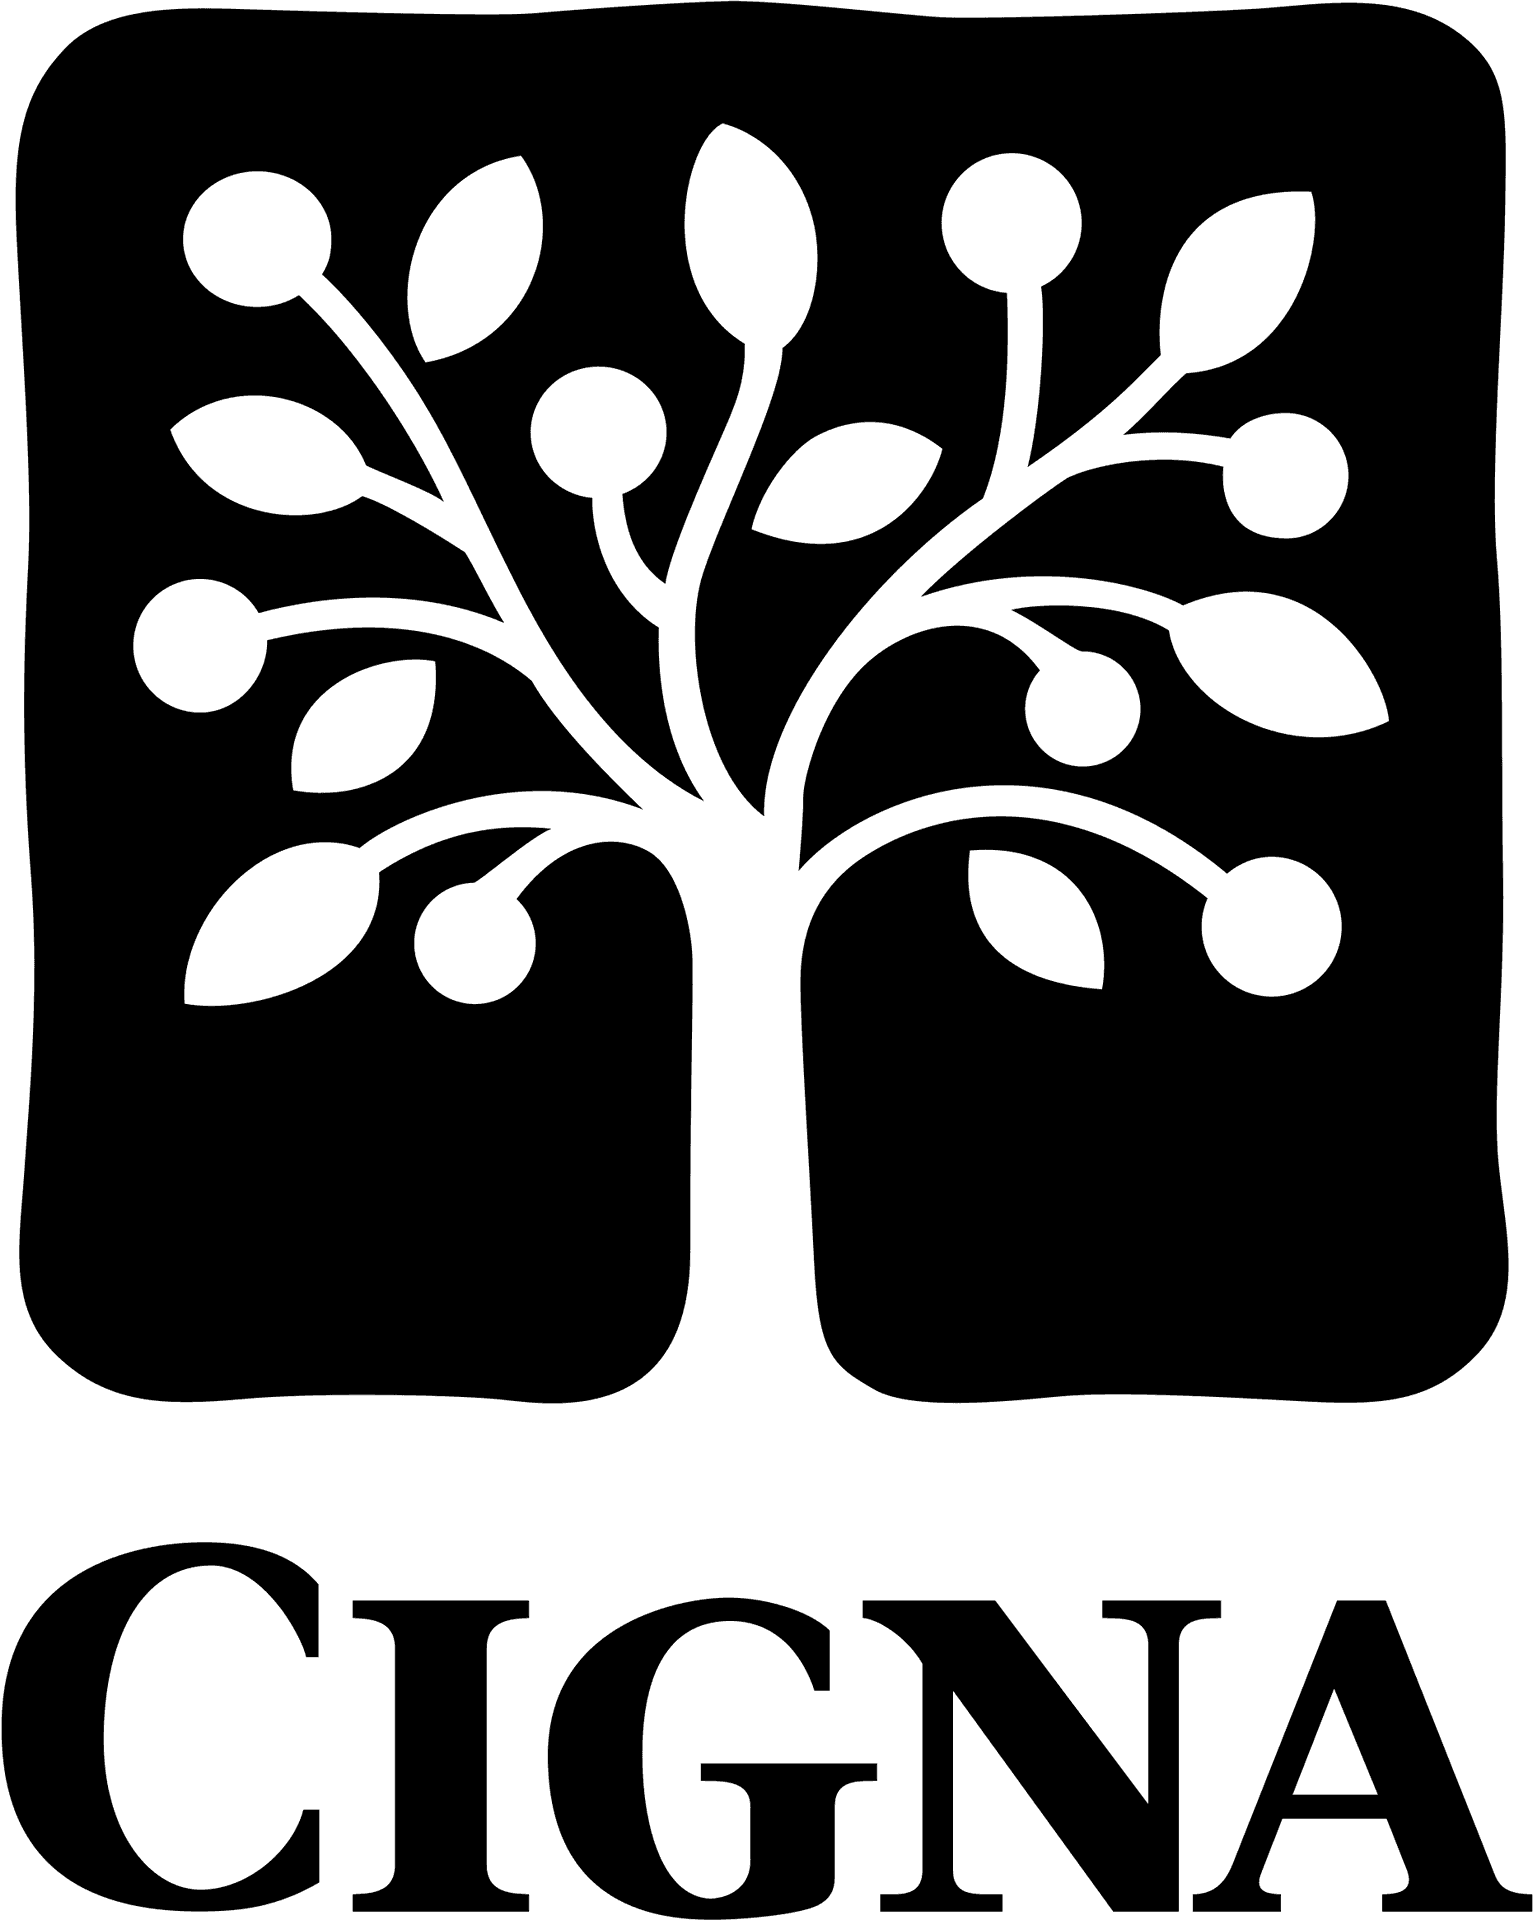 Cigna Healthcare Company Logo PNG